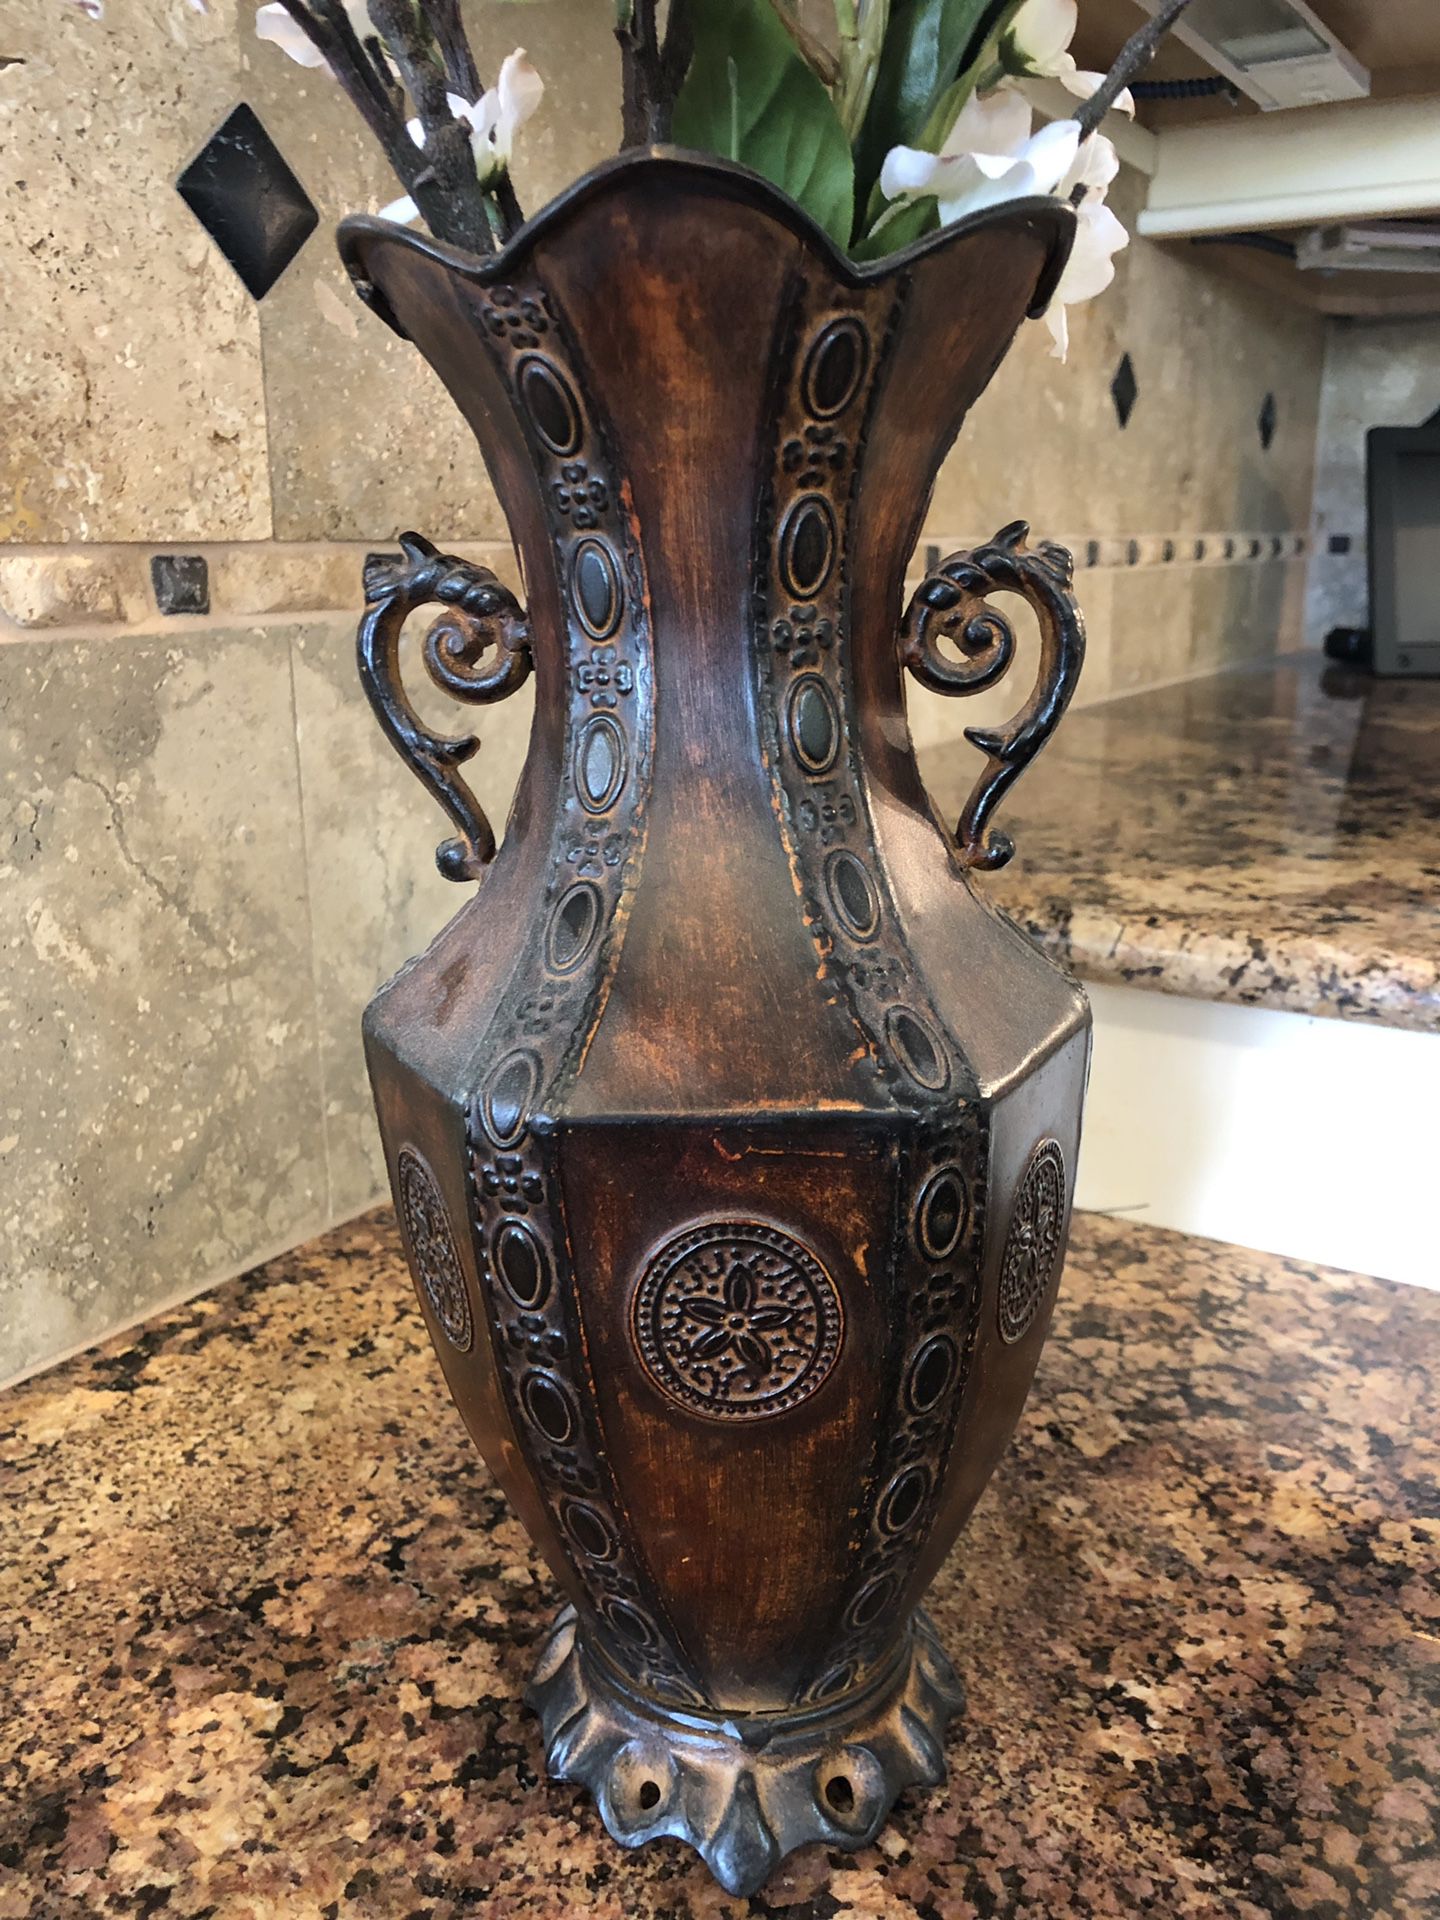 Rustic brown vase